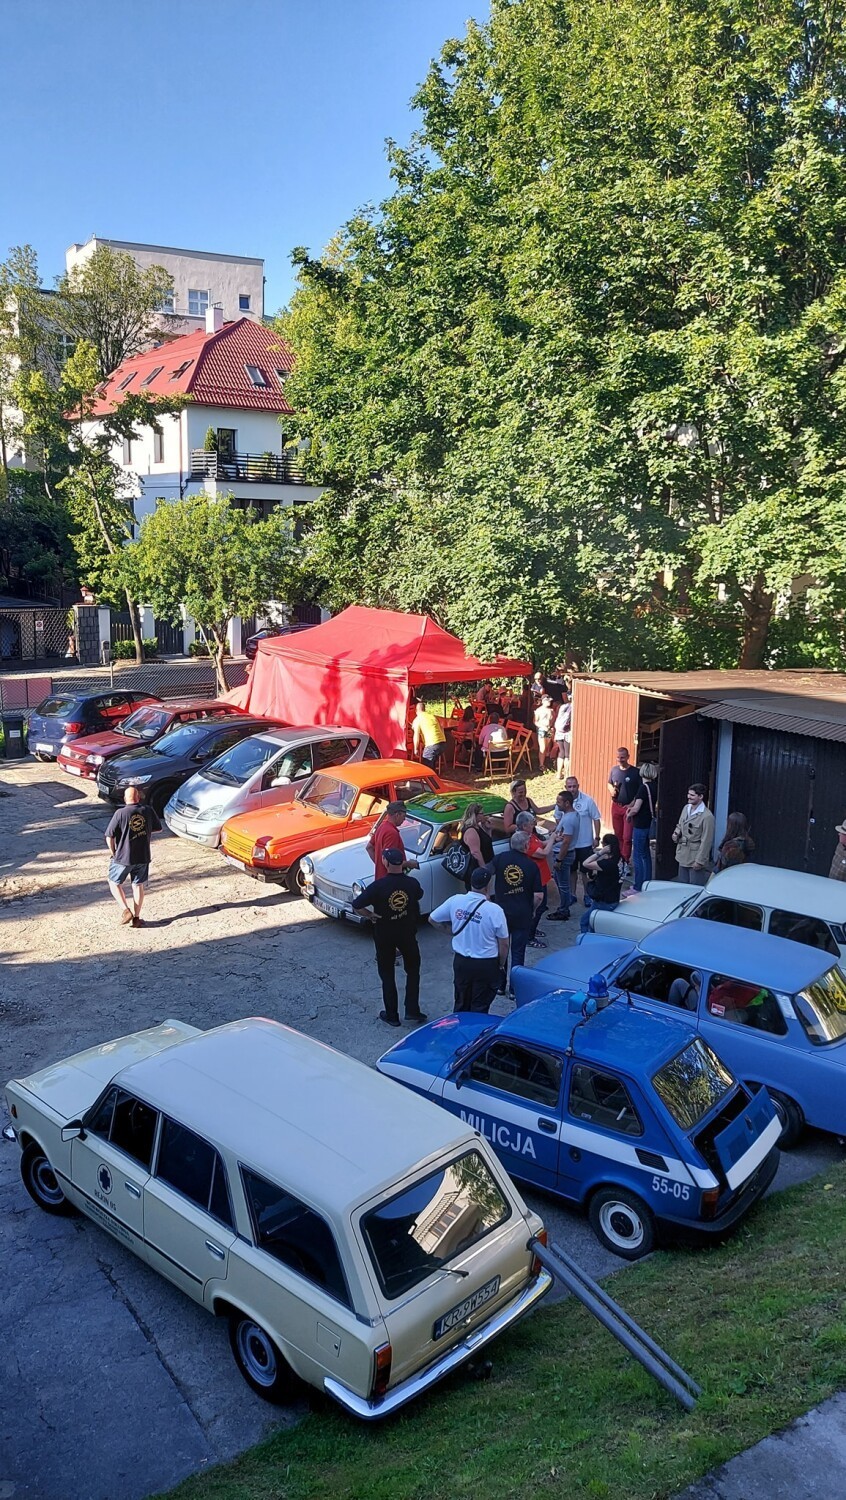 Miłośnicy motoryzacji z Niemiec zajechali trabantami do Gdyni i na Kaszuby! Ich samochody robiły furorę  | ZDJĘCIA